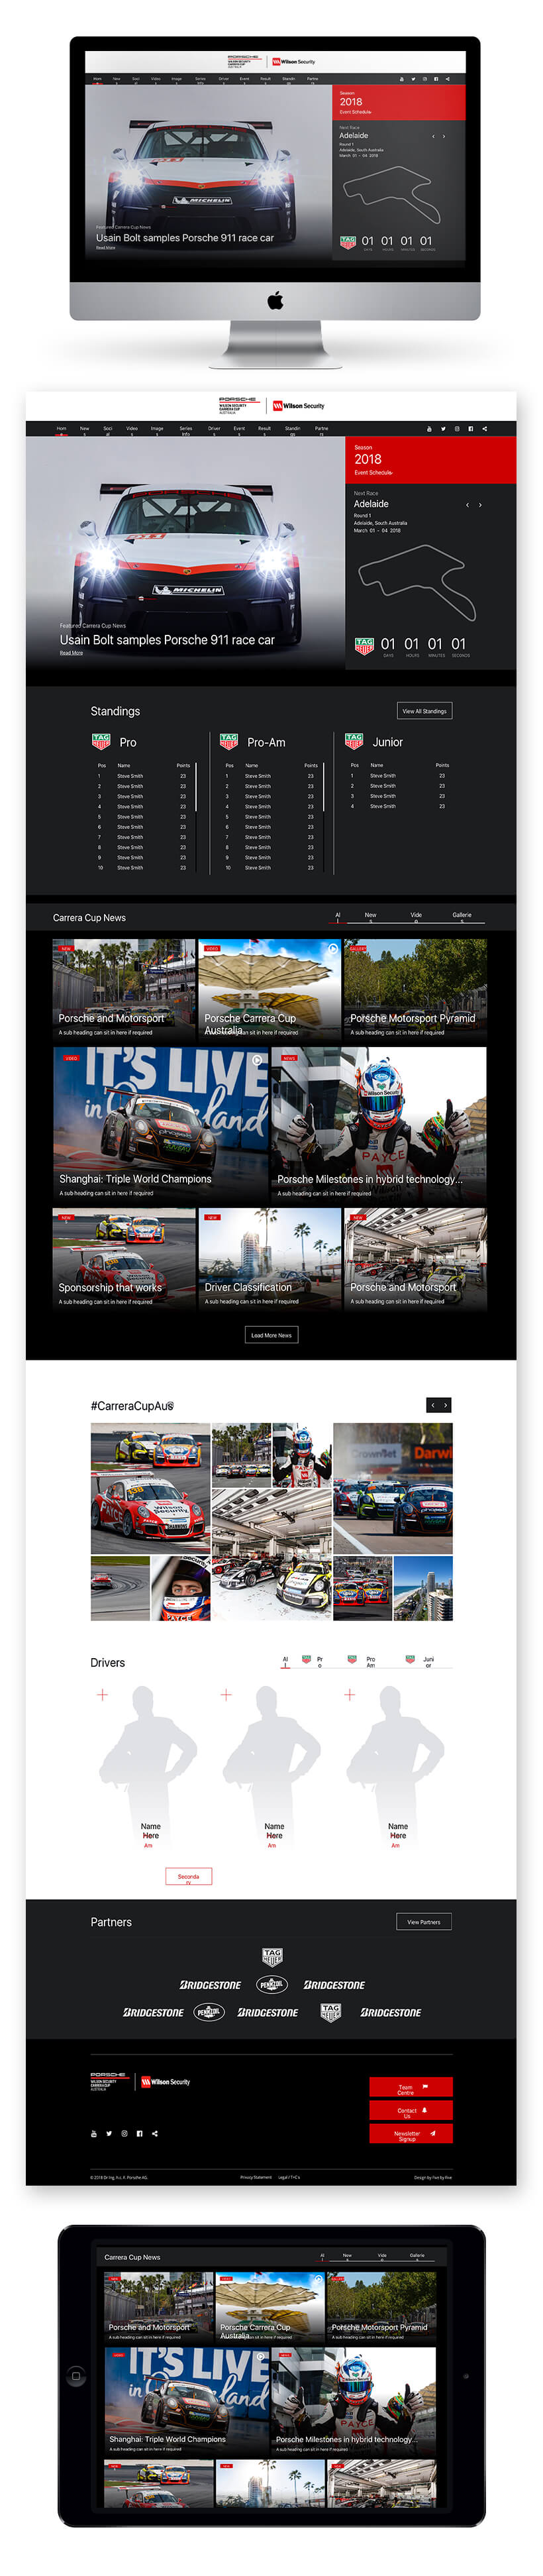 Full Site - Porsche Carrera Cup